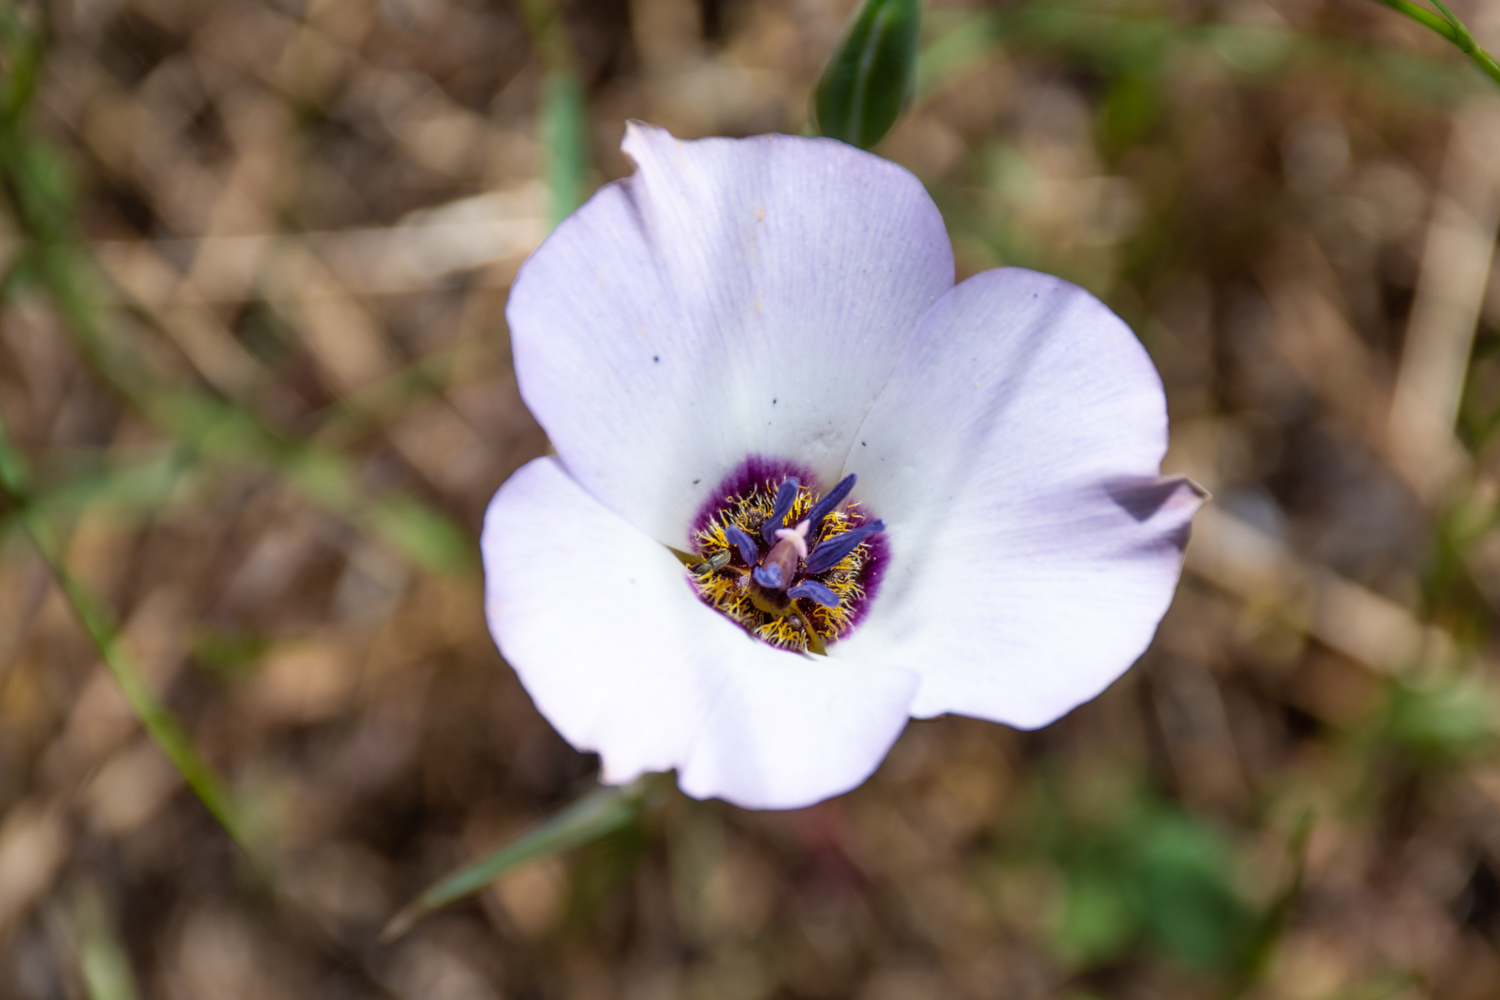 Plain Mariposa Lily (Calochortus invenustus)